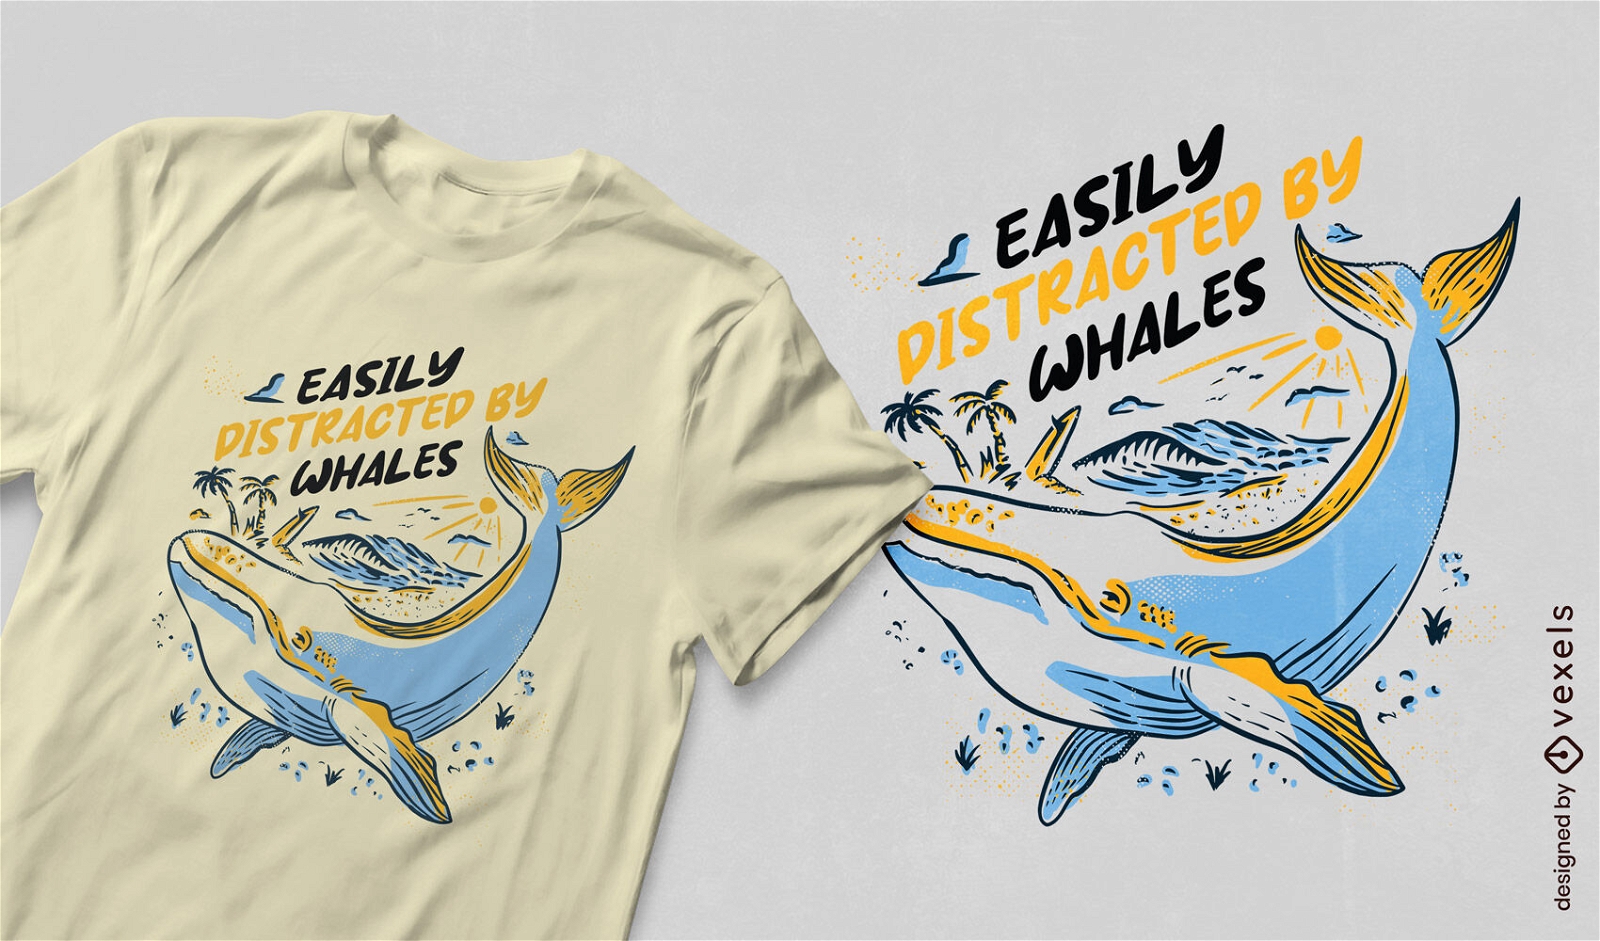 Diseño de camiseta con cita de distracción de ballena caprichosa.